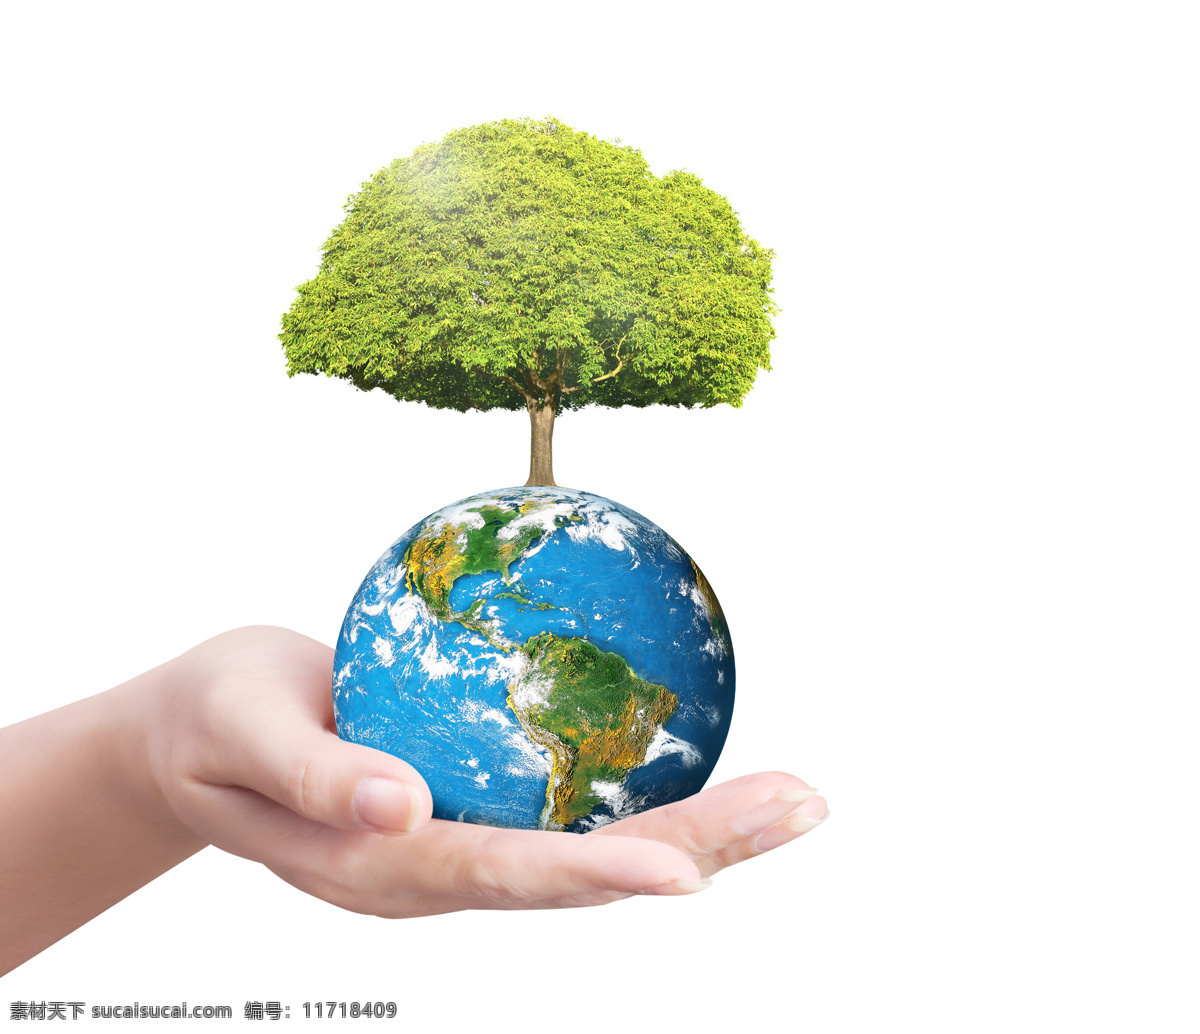 eco 爱护地球 保护地球 保护环境 大树 地球 环保 地球绿色大树 绿色 绿树 星球 全球化 环境保护 科学 研究地球 蓝色星球 矢量图 现代科技